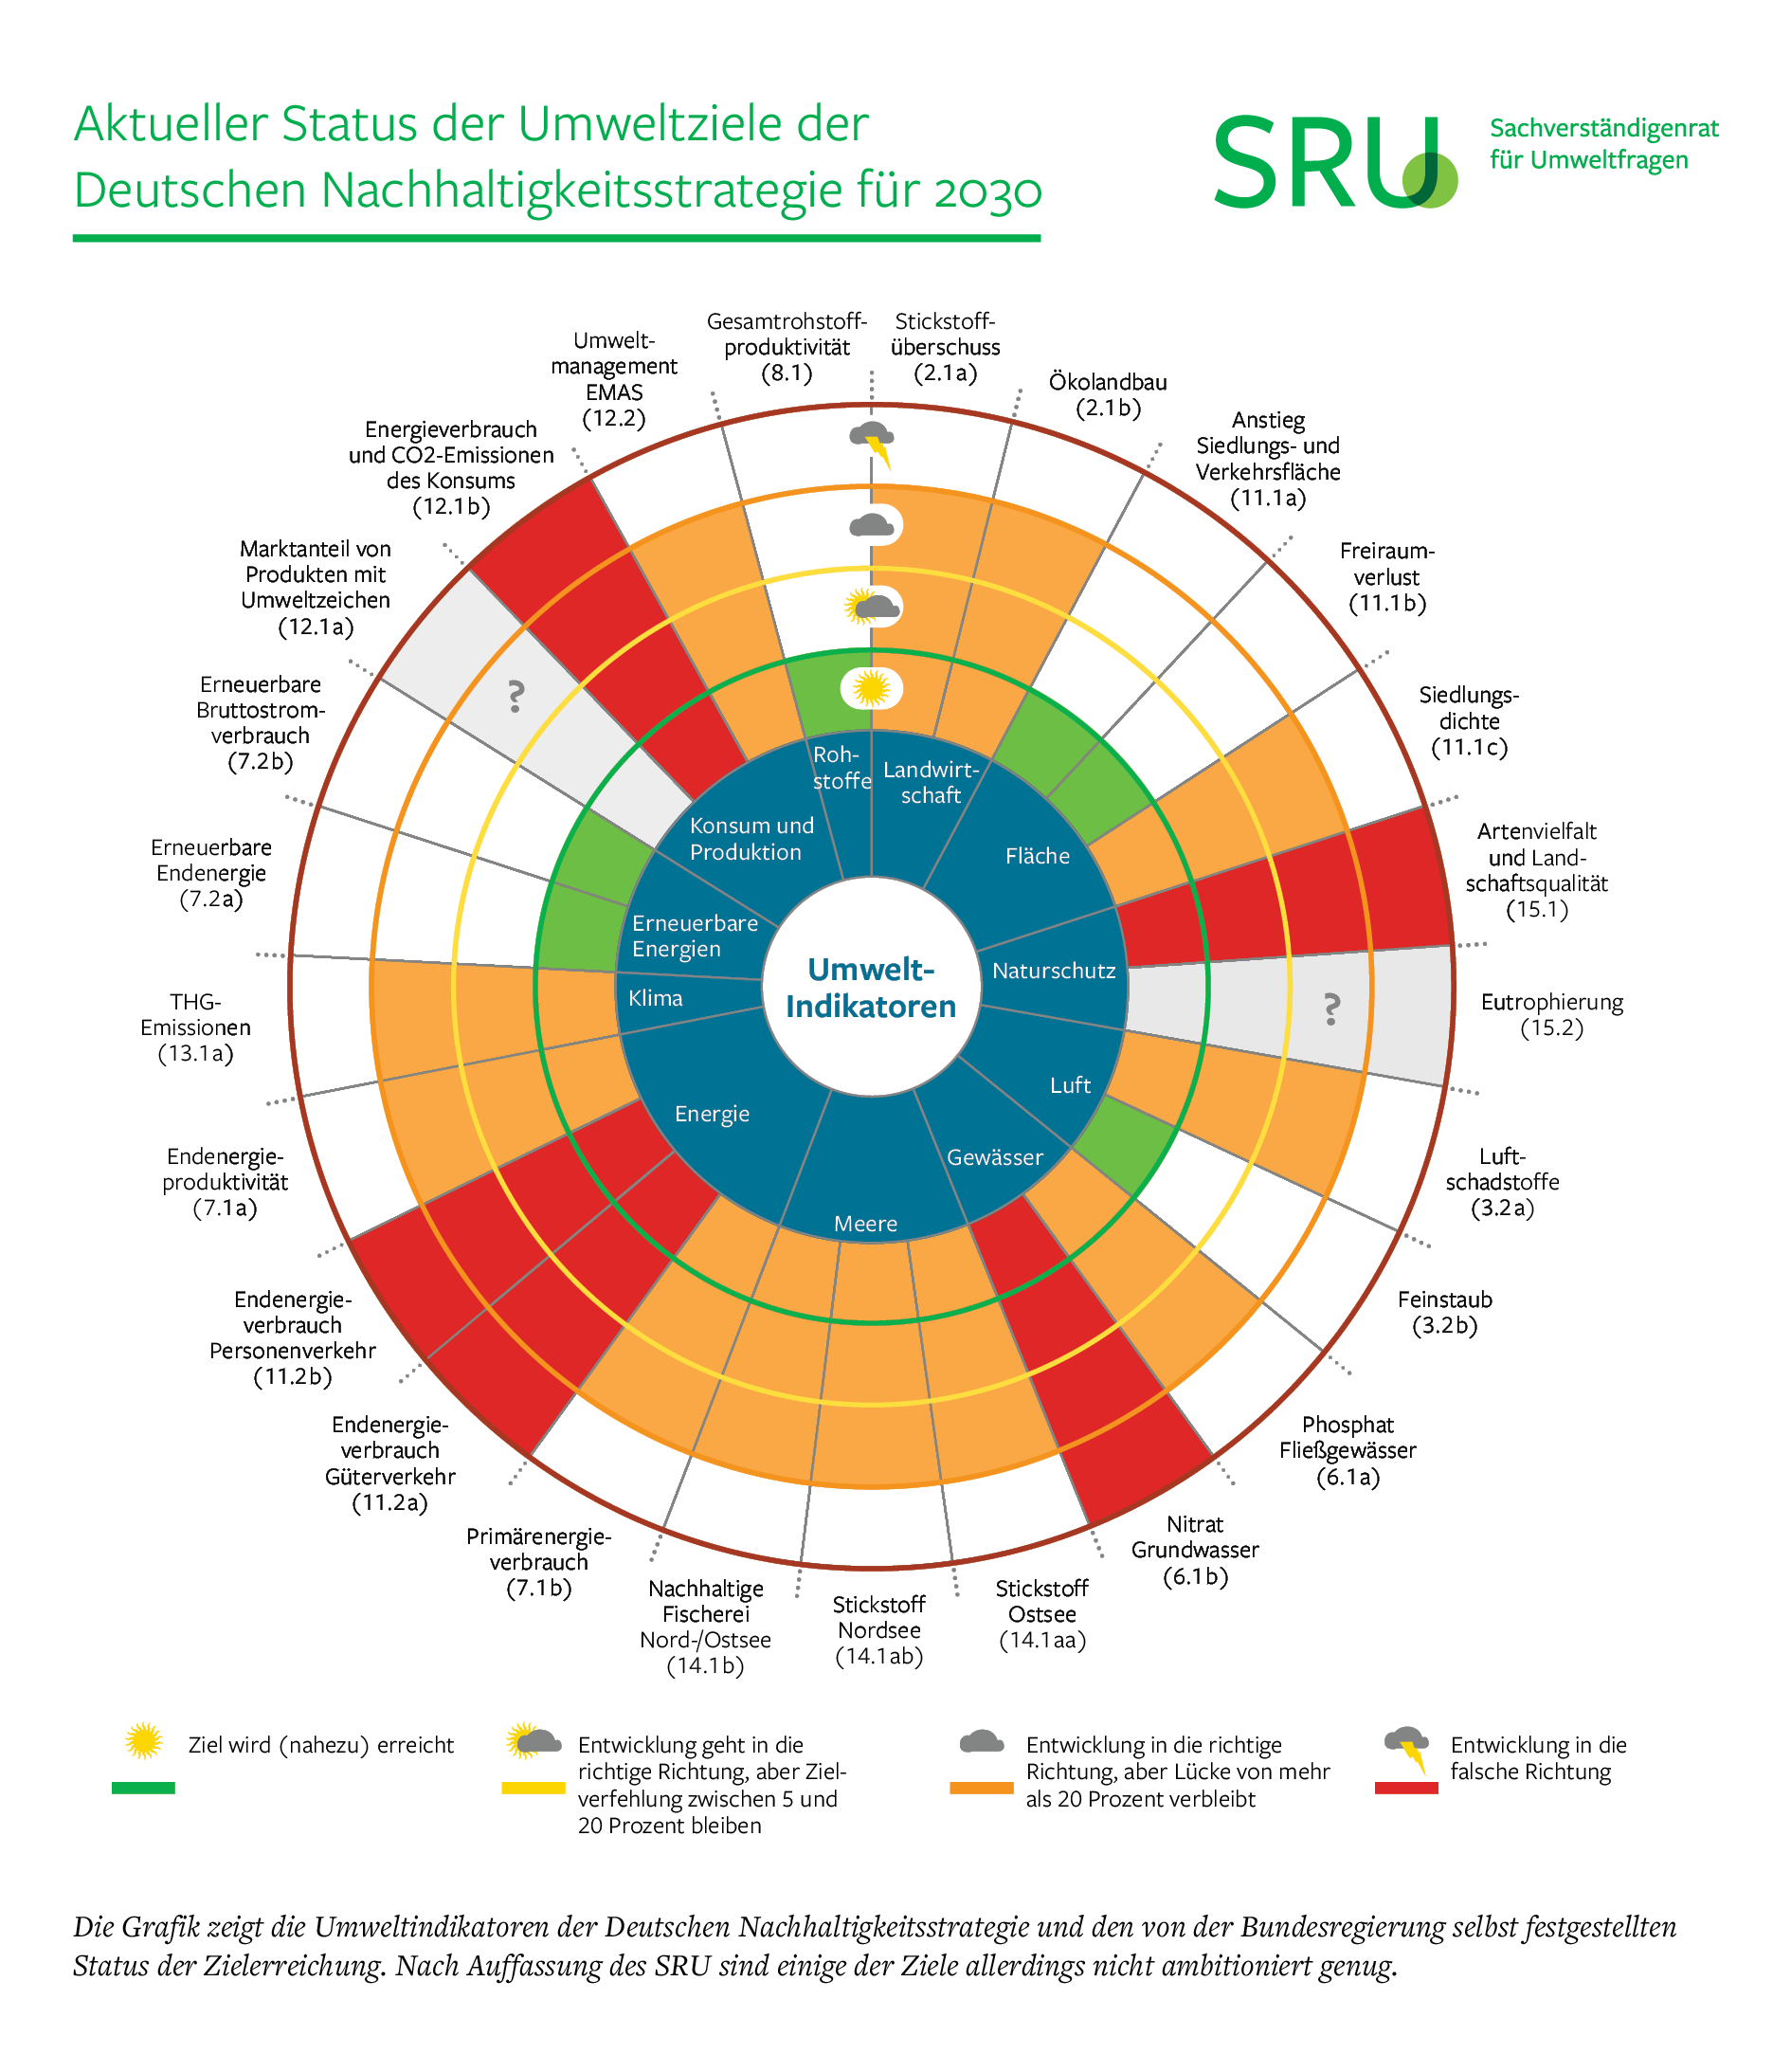 Grafik (hochaufgelöst): Aktueller Status der Umweltziele der Deutschen Nachhaltigkeitsstrategie für 2030